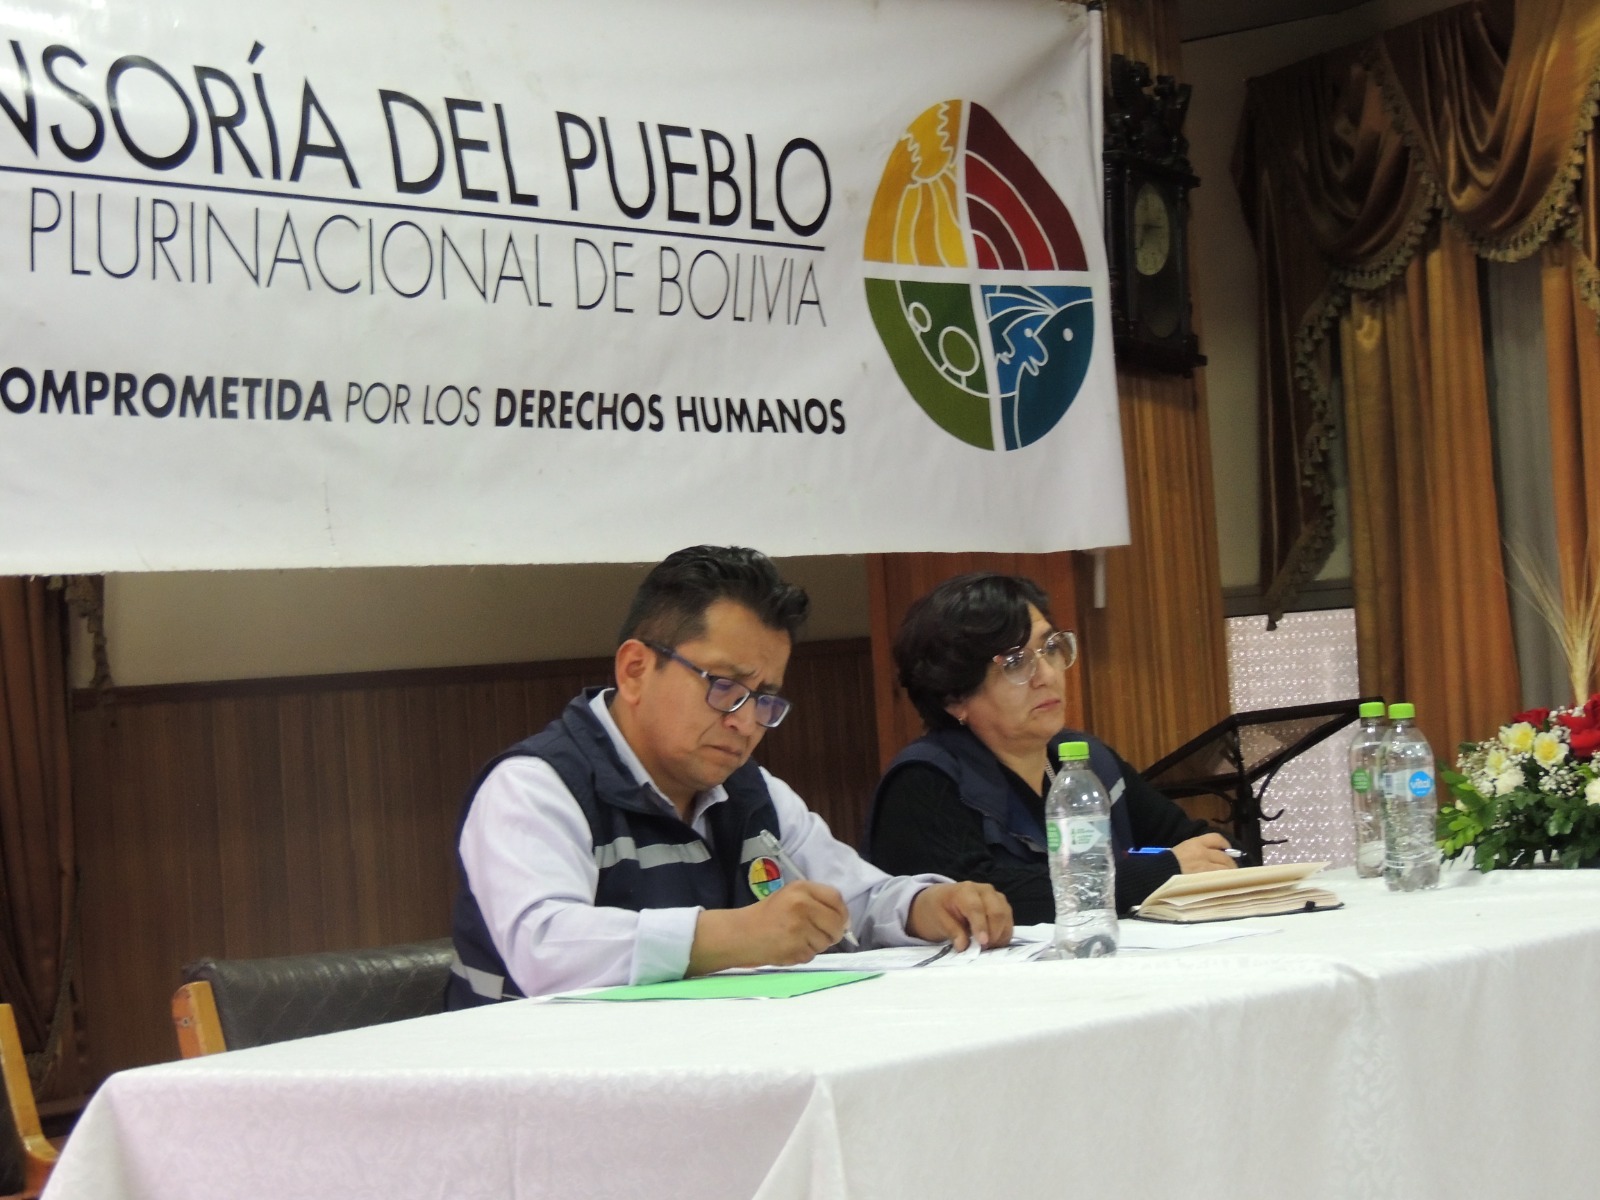 En audiencia pública en Potosí, Defensor del Pueblo recibe denuncias de discriminación y falencias en la atención médica hacia personas con discapacidad Más de 70 personas e instituciones participaron de la audiencia pública defensorial.